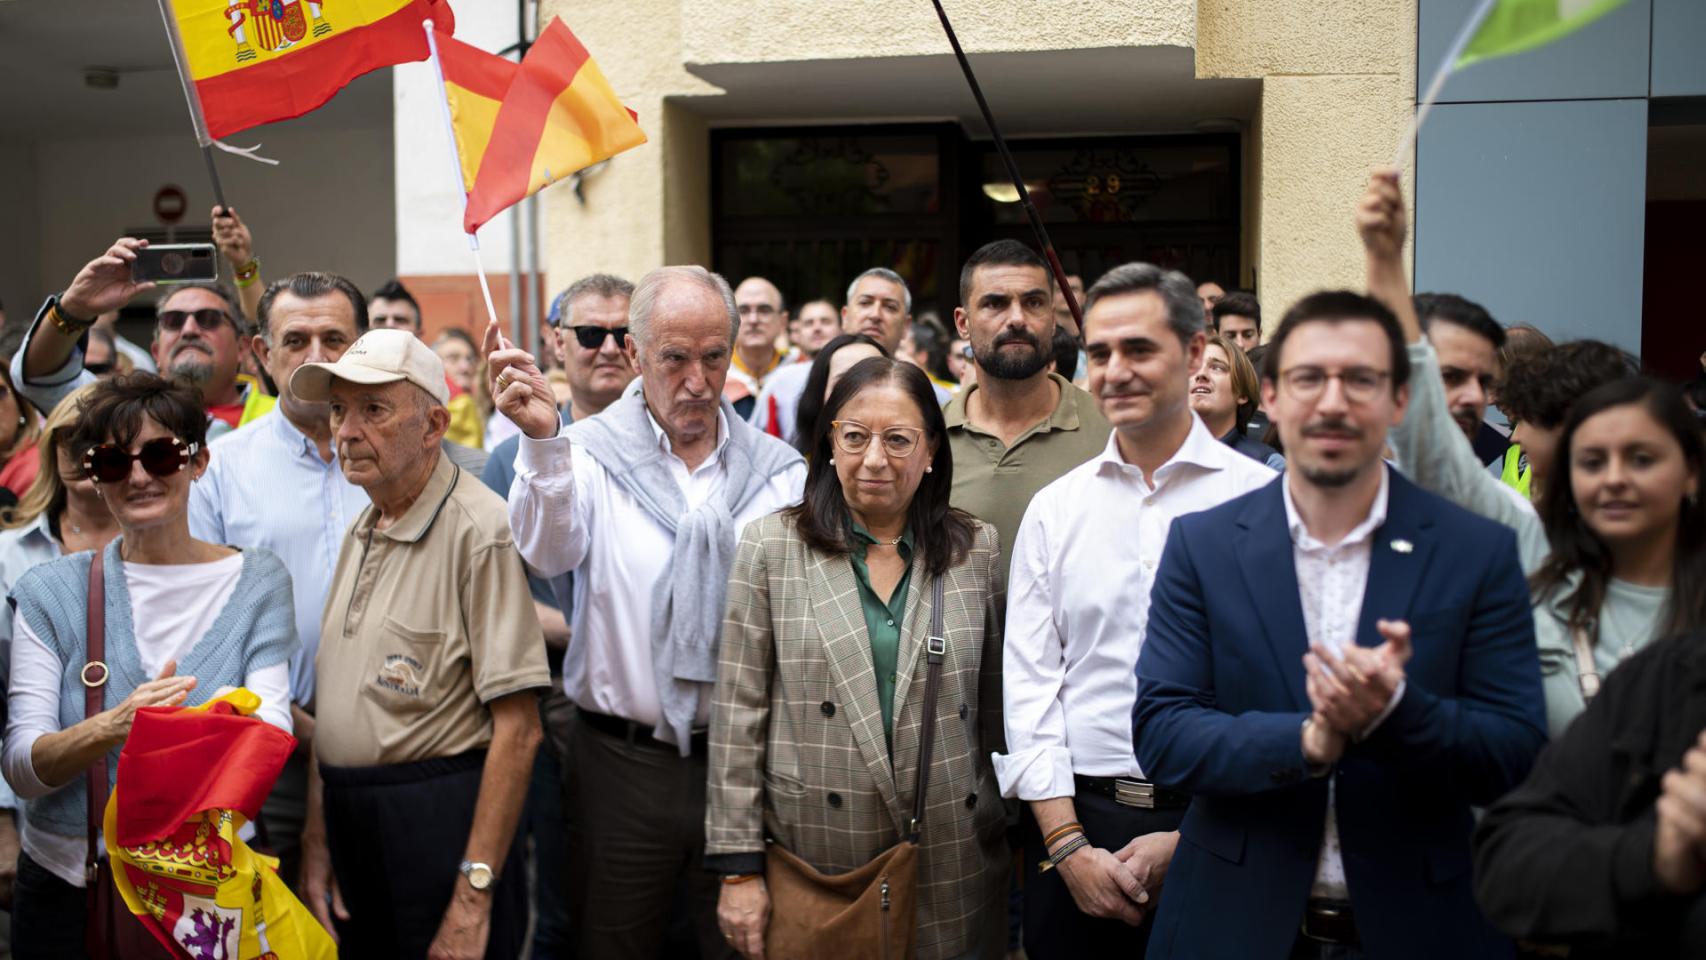 La presidenta de las Cortes Valencianas, Llanos Massó, participa en la protesta convocada por VOX contra la amnistía frente a la sede del PSOE en Castellón este domingo